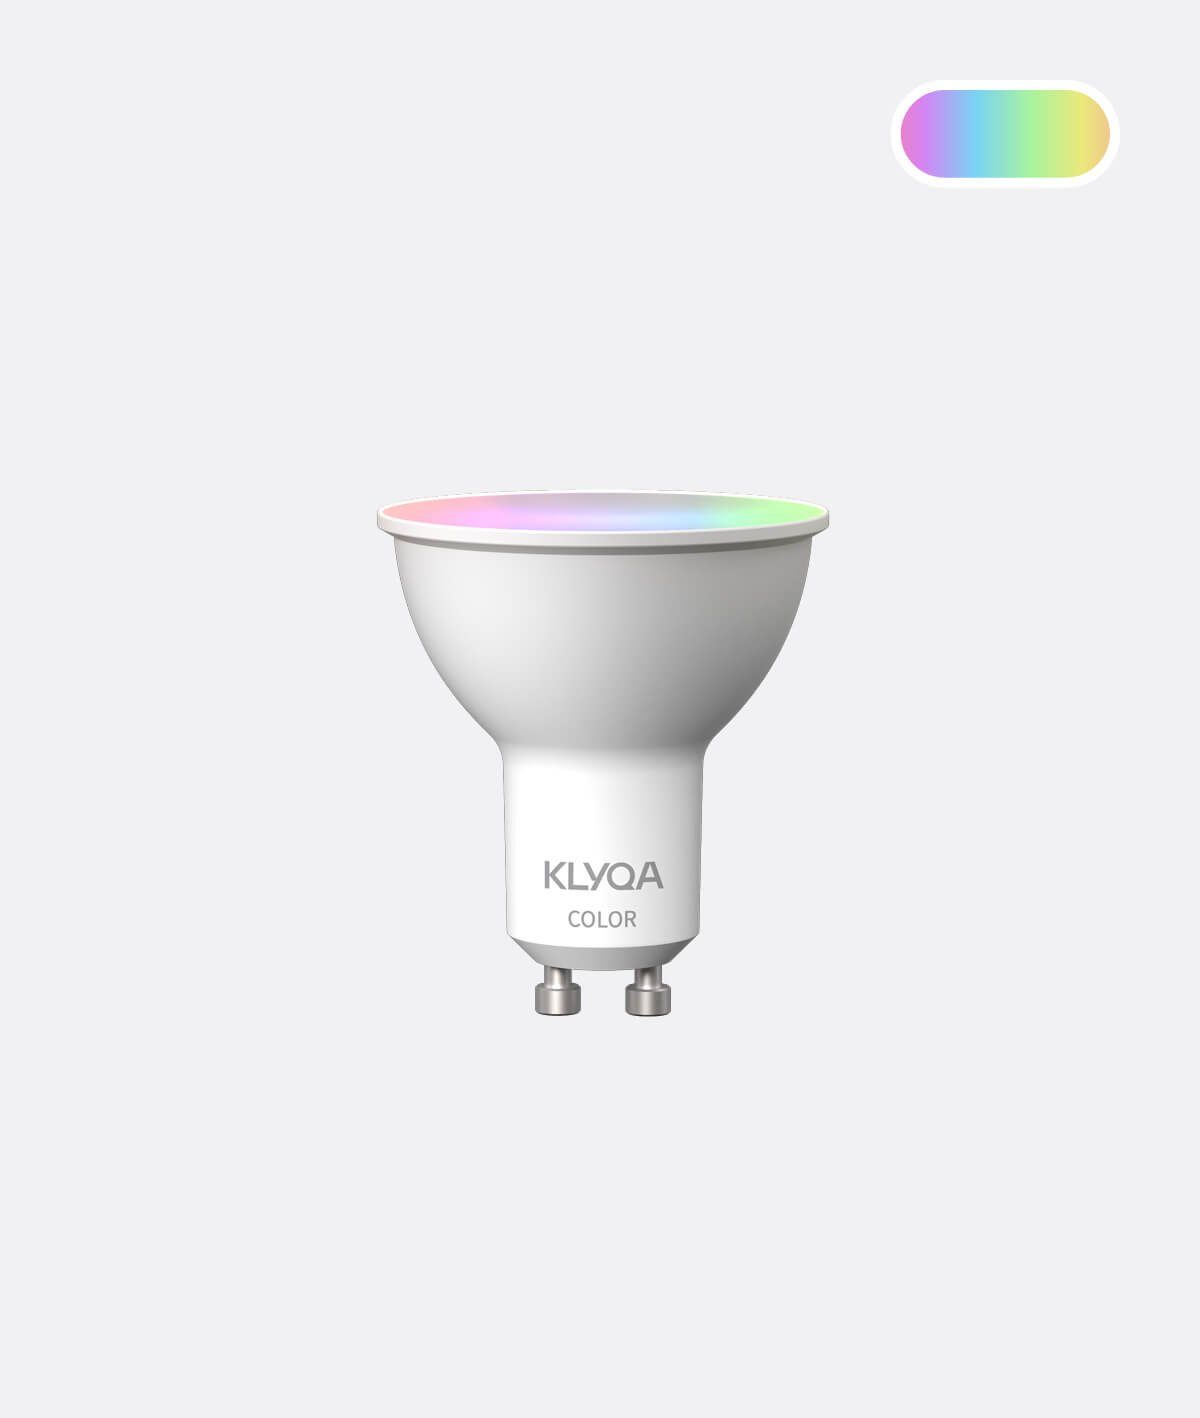 Klyqa KL-G10C Smarte Lampe, Farbtemperatur anpassbar